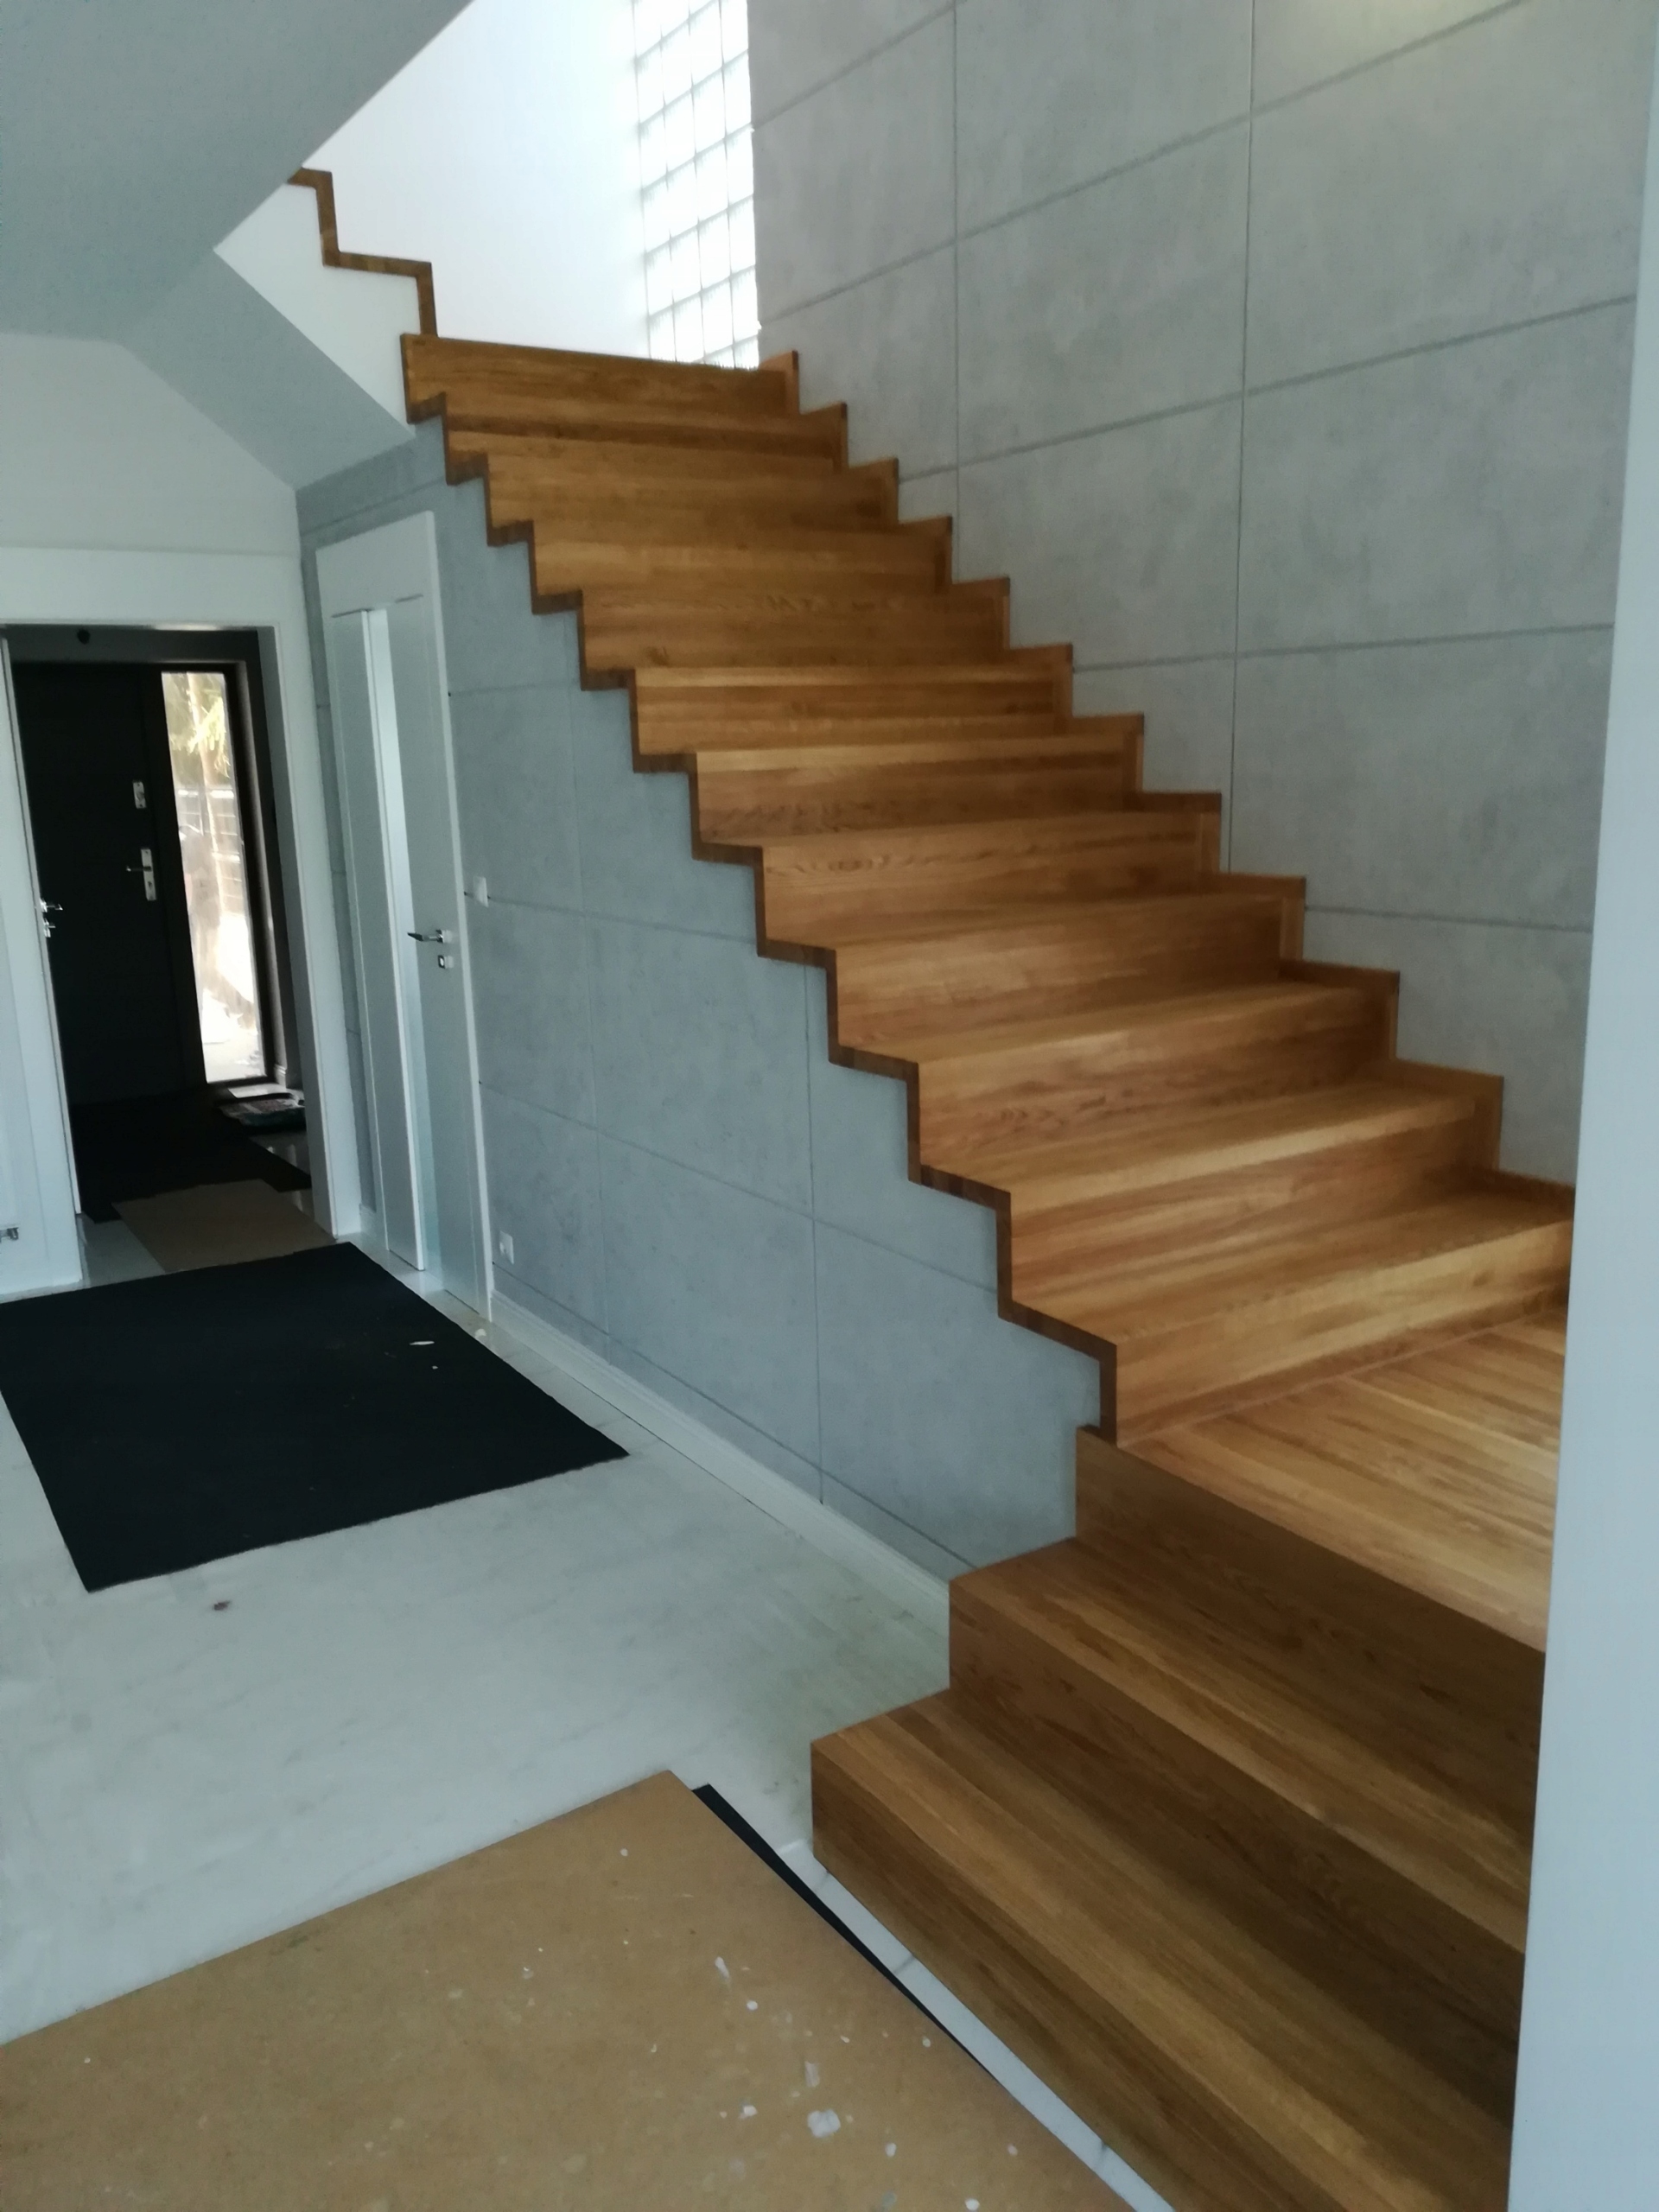 schody-z-drewna-na-beton-samono-ne-lub-dywanowe-7632715260